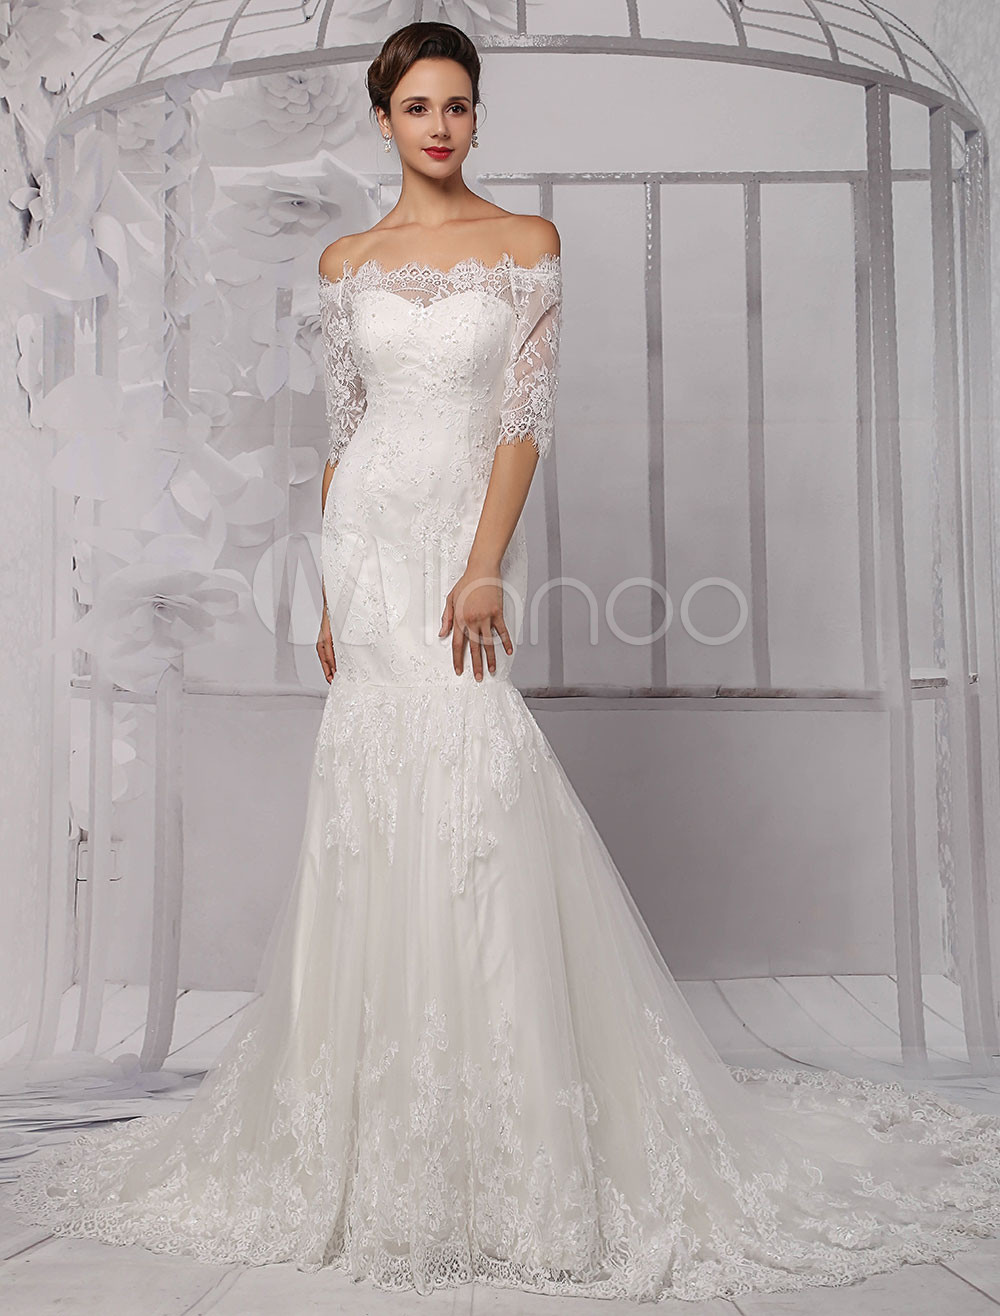 Lace Off The Shoulder Wedding Dress
 Half Sleeve f the Shoulder Lace Wedding Dress in Trumpet